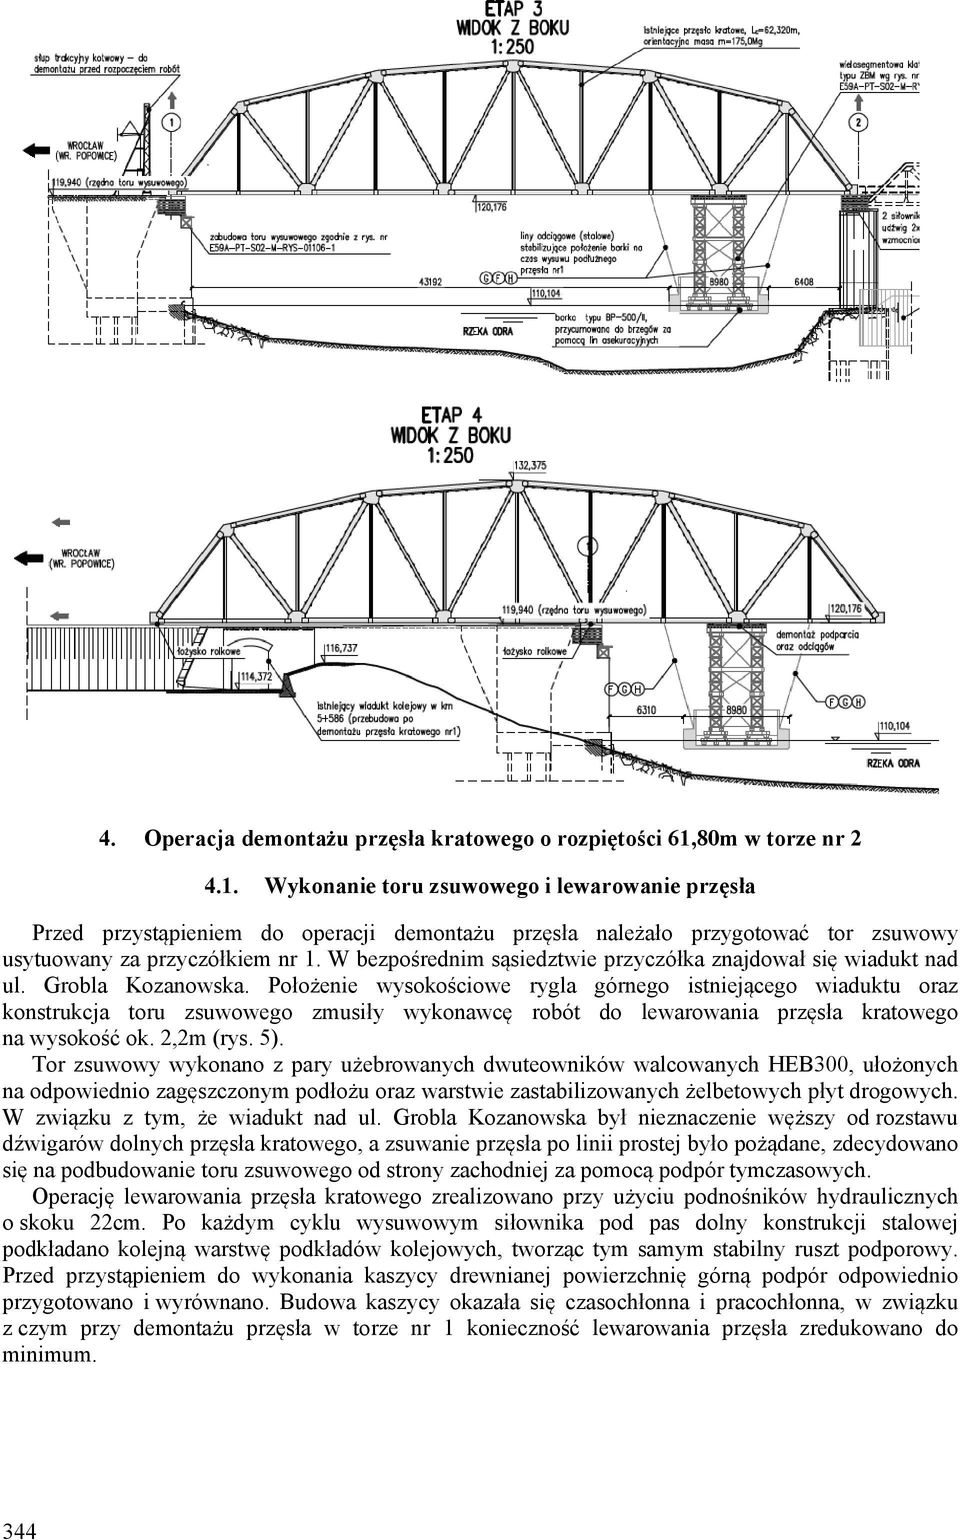 W bezpośrednim sąsiedztwie przyczółka znajdował się wiadukt nad ul. Grobla Kozanowska.